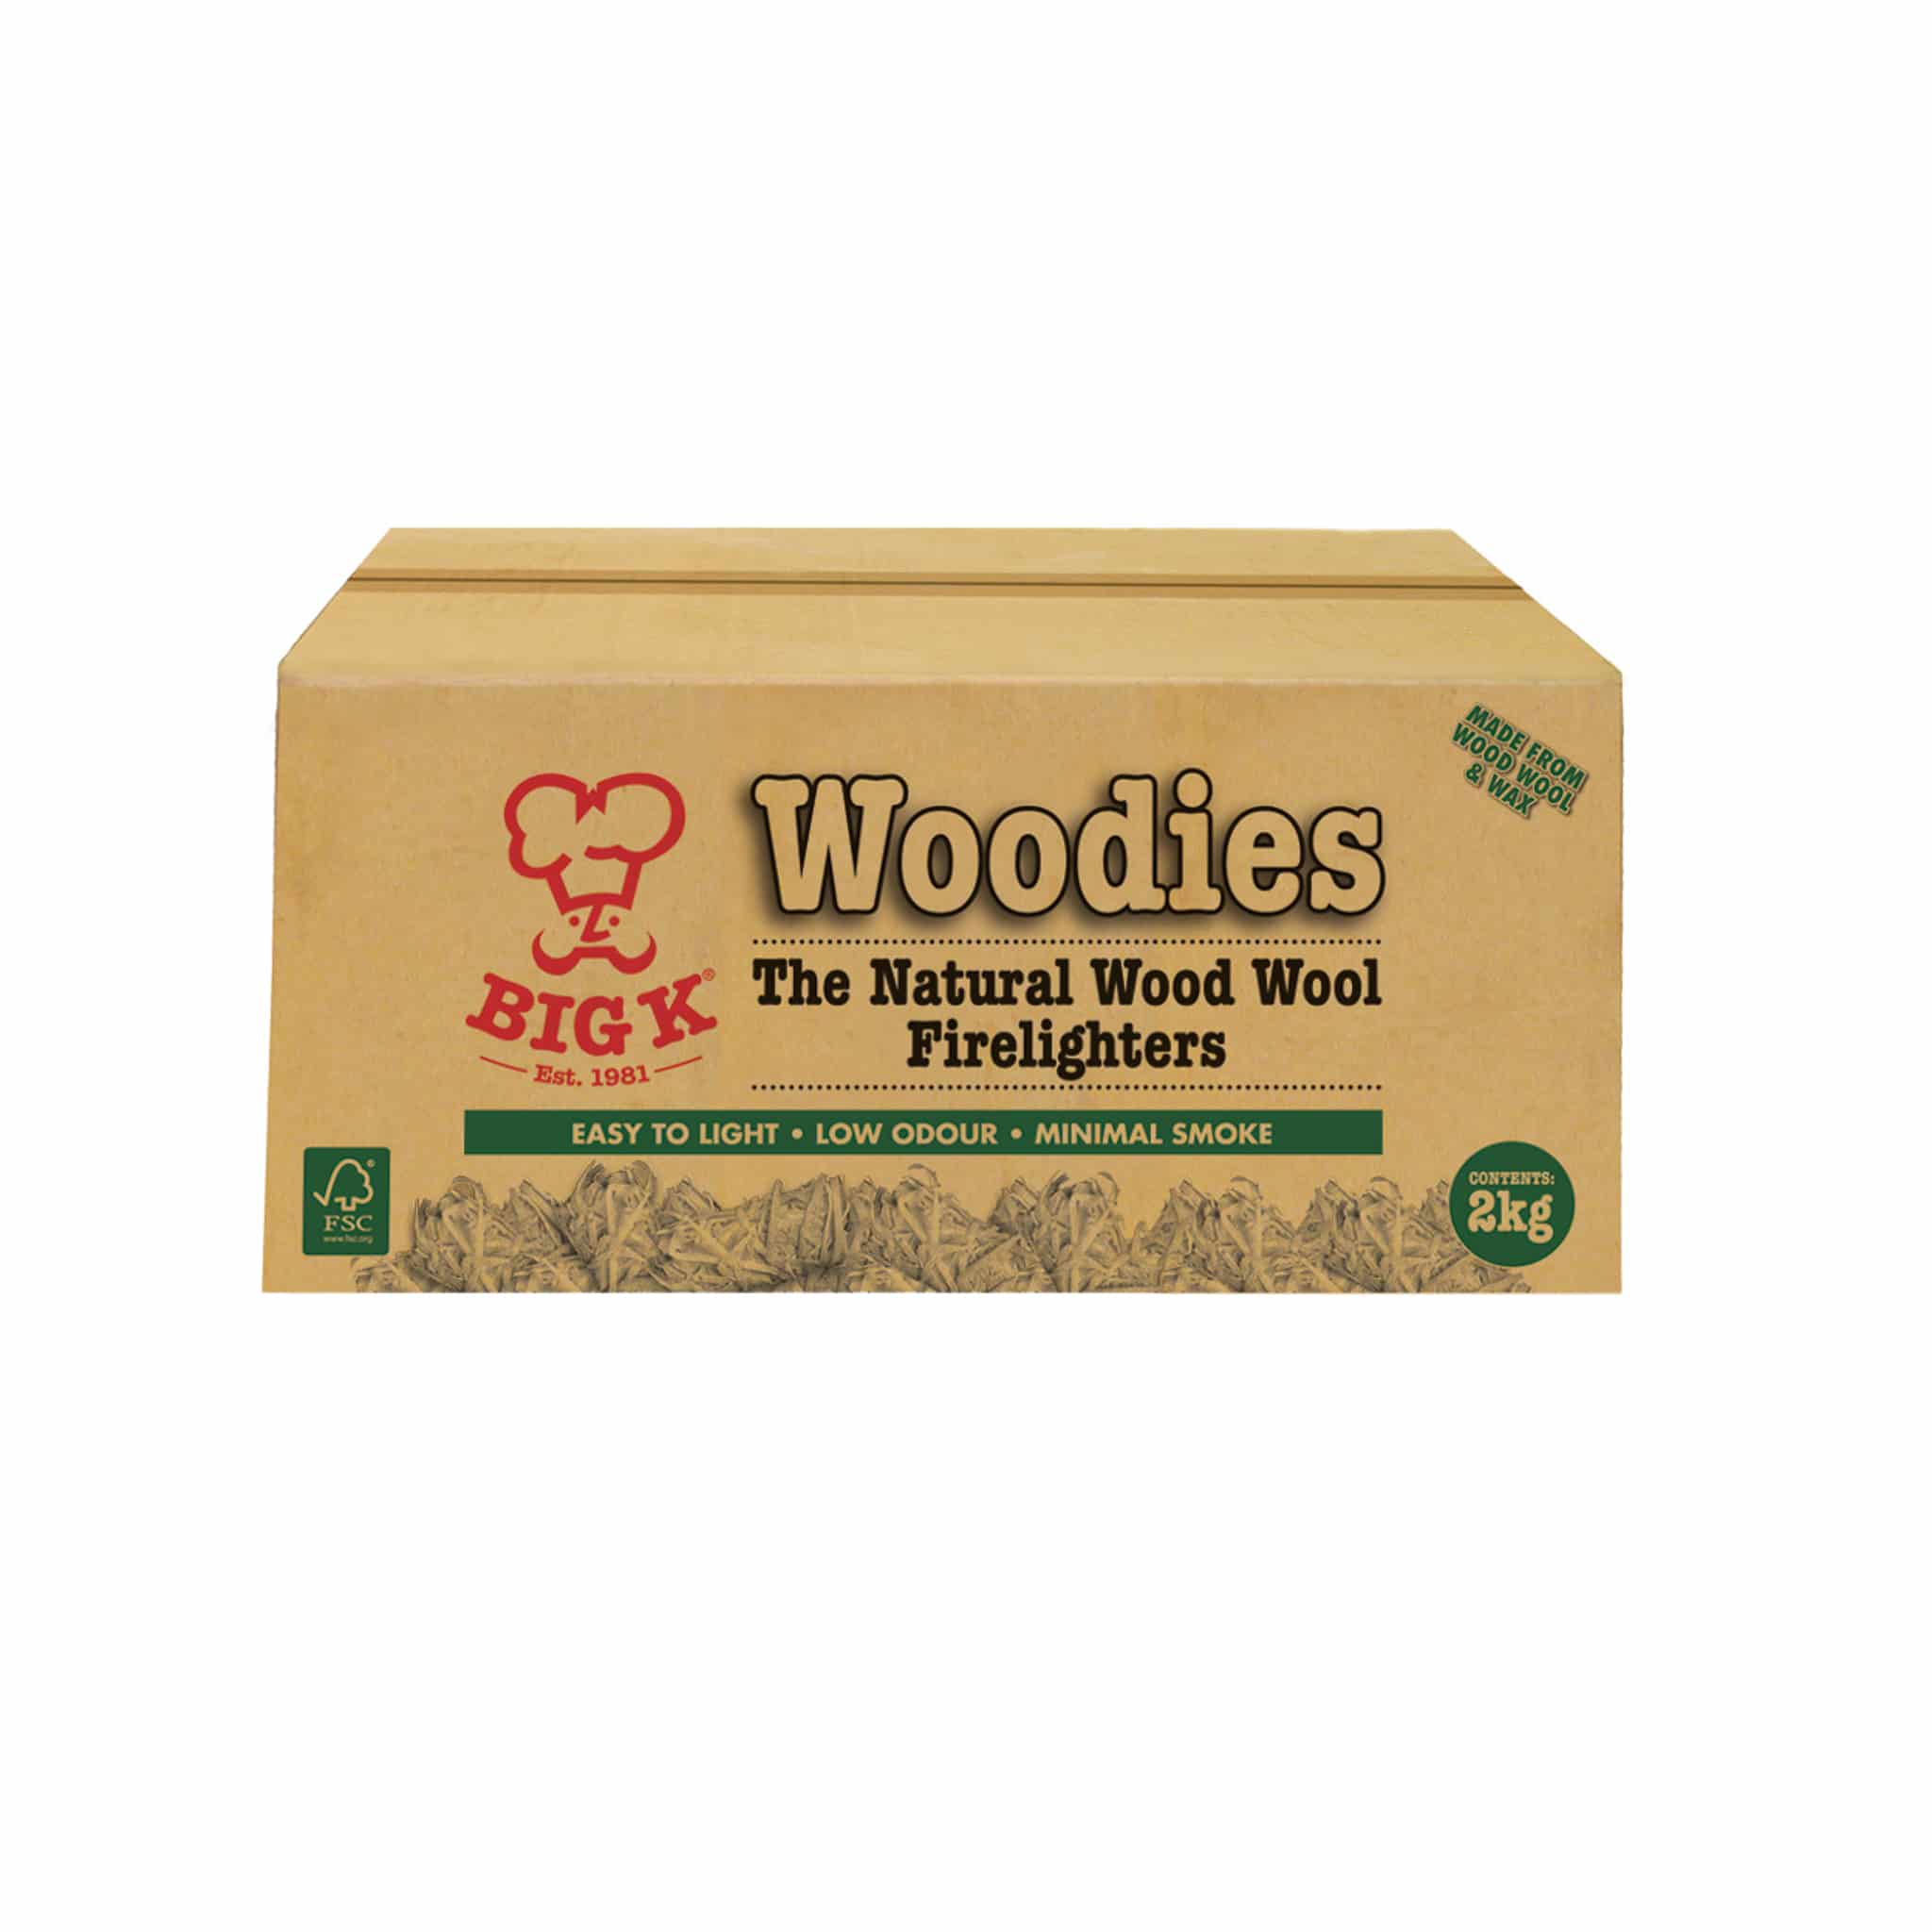 Big K Woodies Natural Wood Wool Firelighters, 2kg